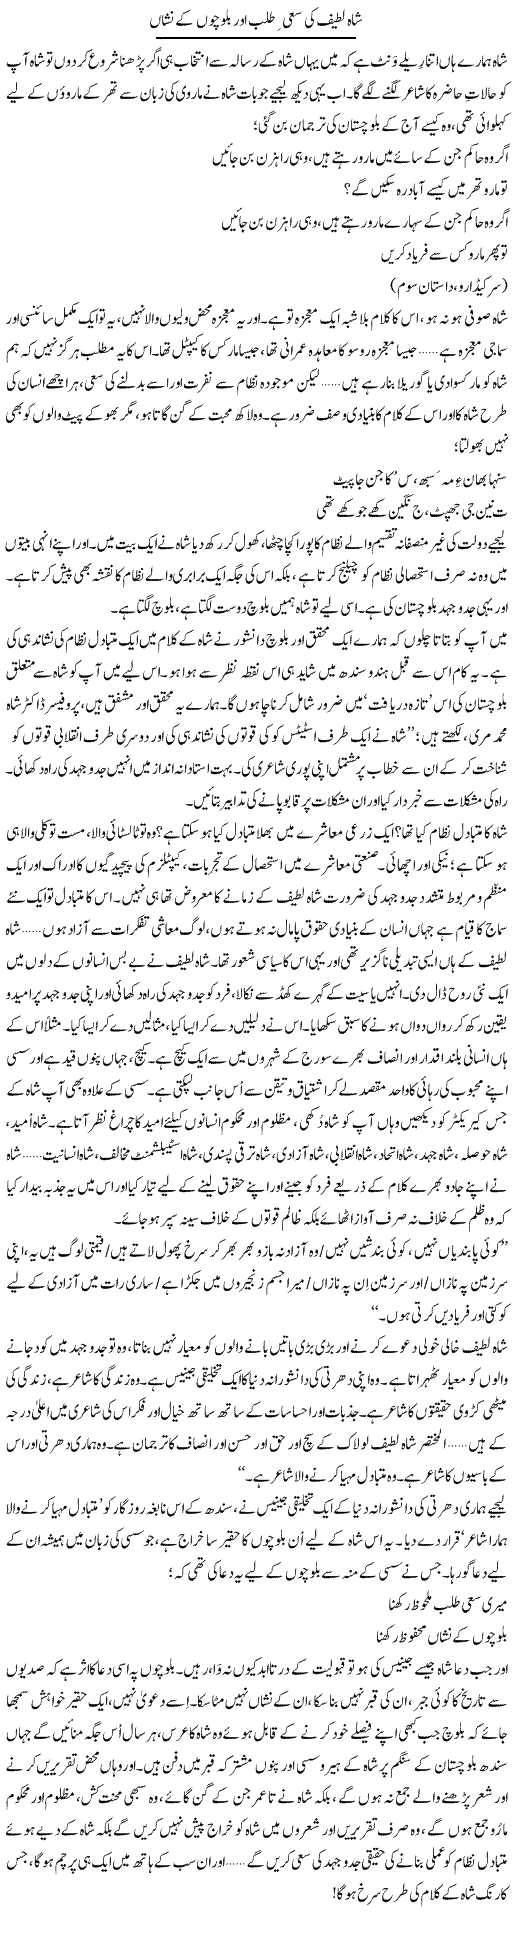 Shah Lateef Ki Sai Talab Our Balochon K Nishan | Abid Mir | Daily Urdu Columns